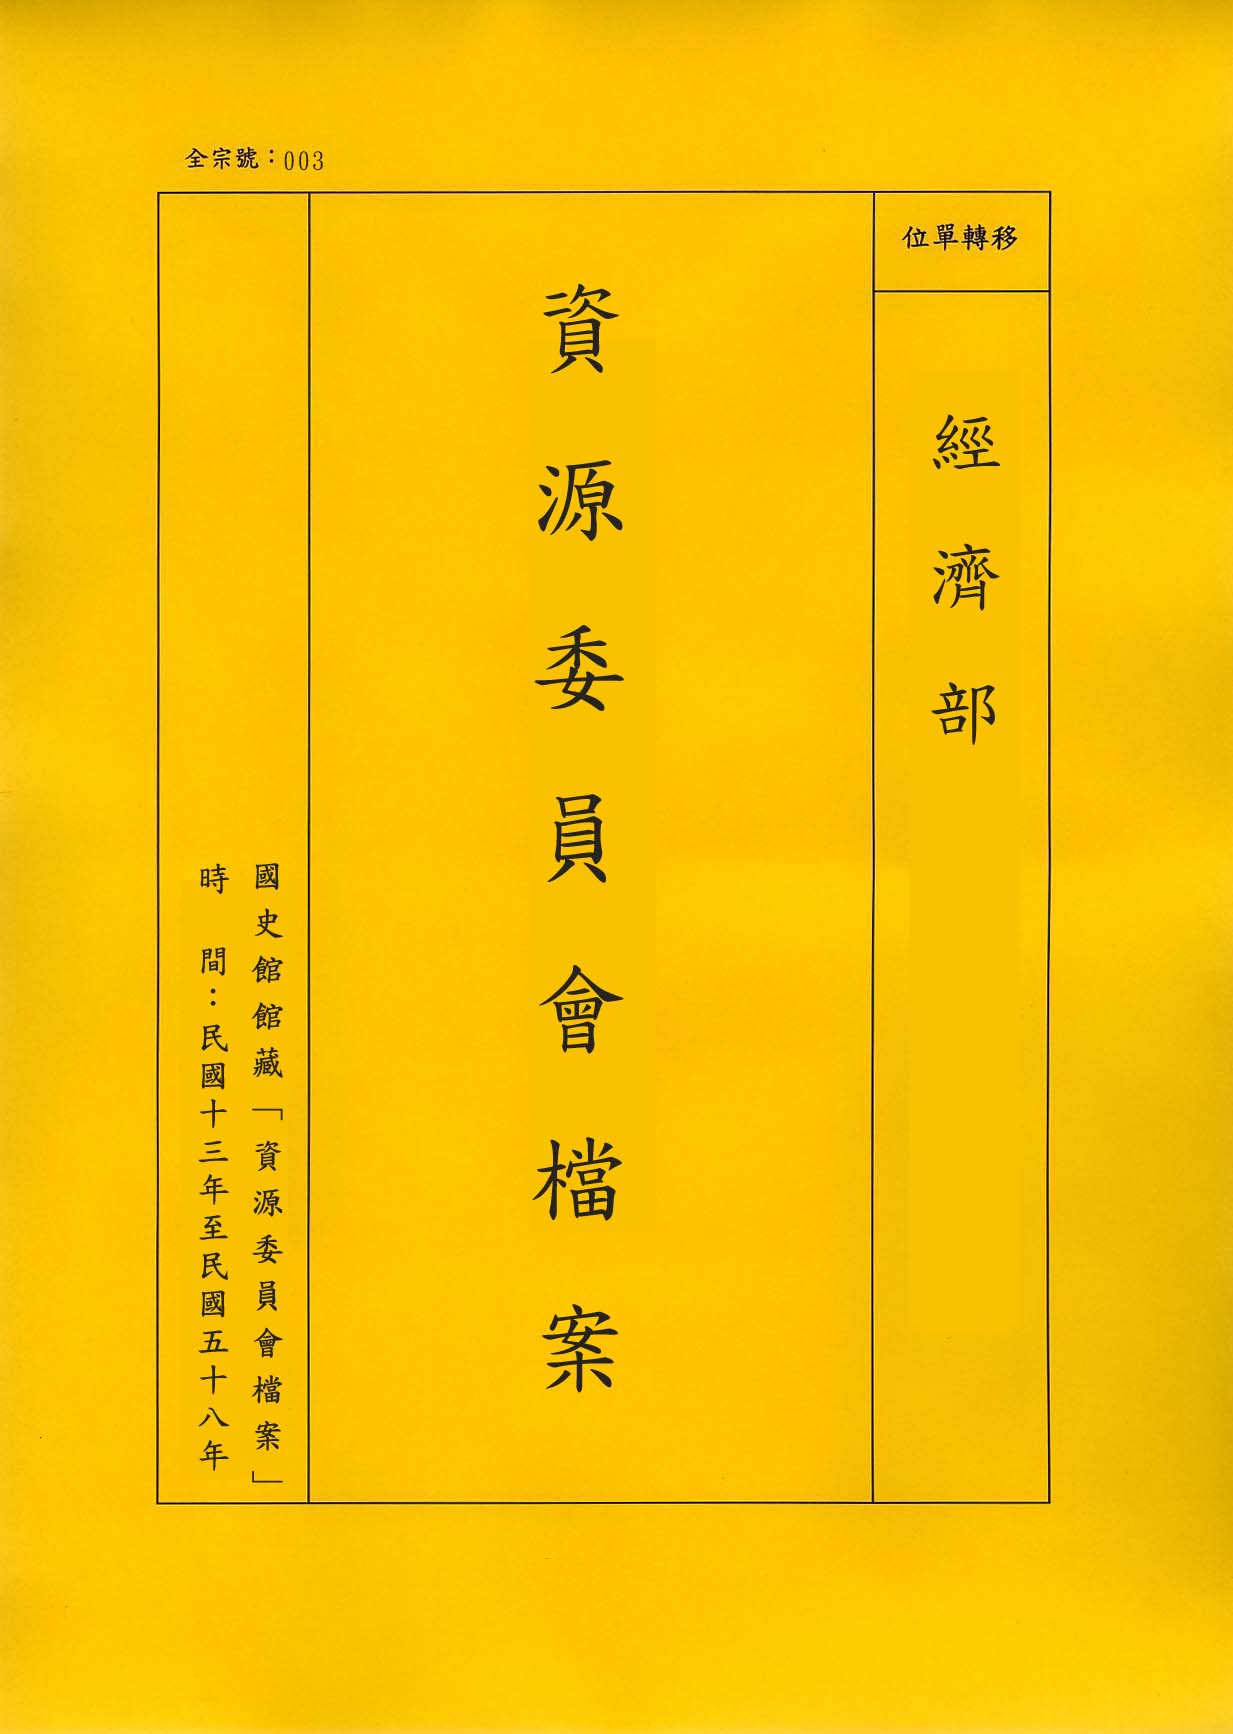 卷名:紡織工廠調查表─上海(一)(003-010306-0221)